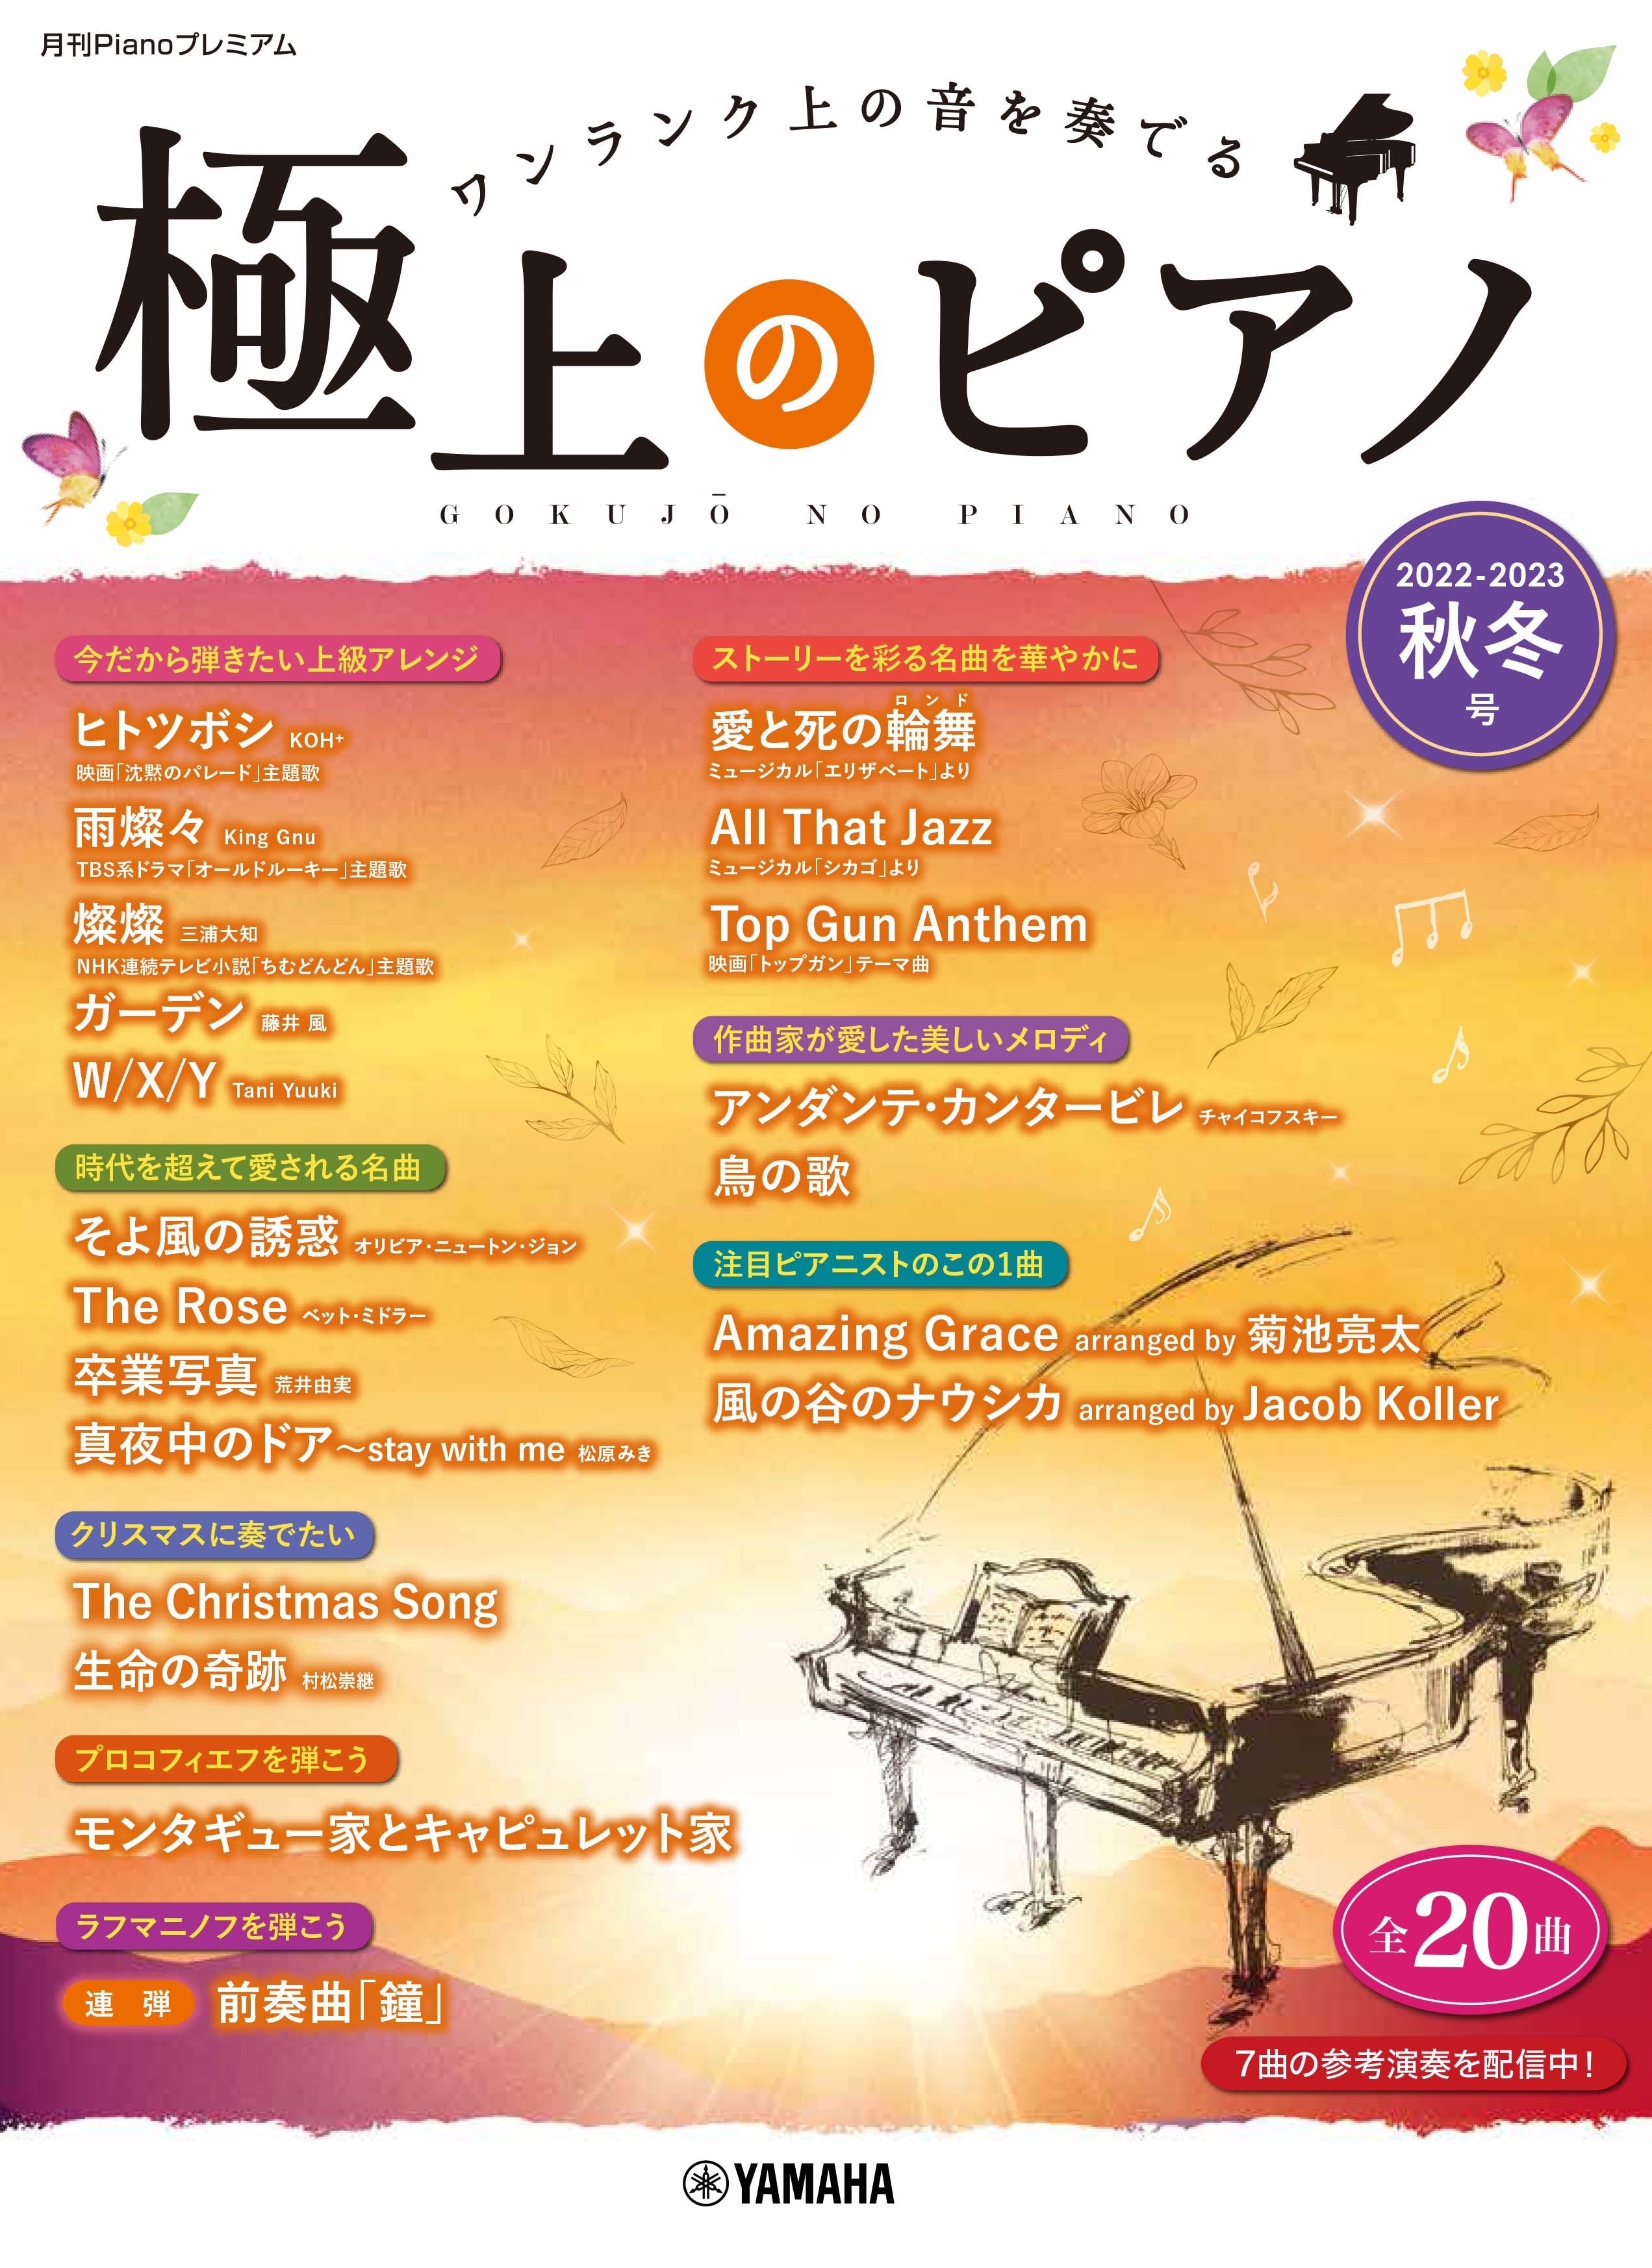 月刊Pianoプレミアム 極上のピアノ 2016年春夏号 リスニングCD